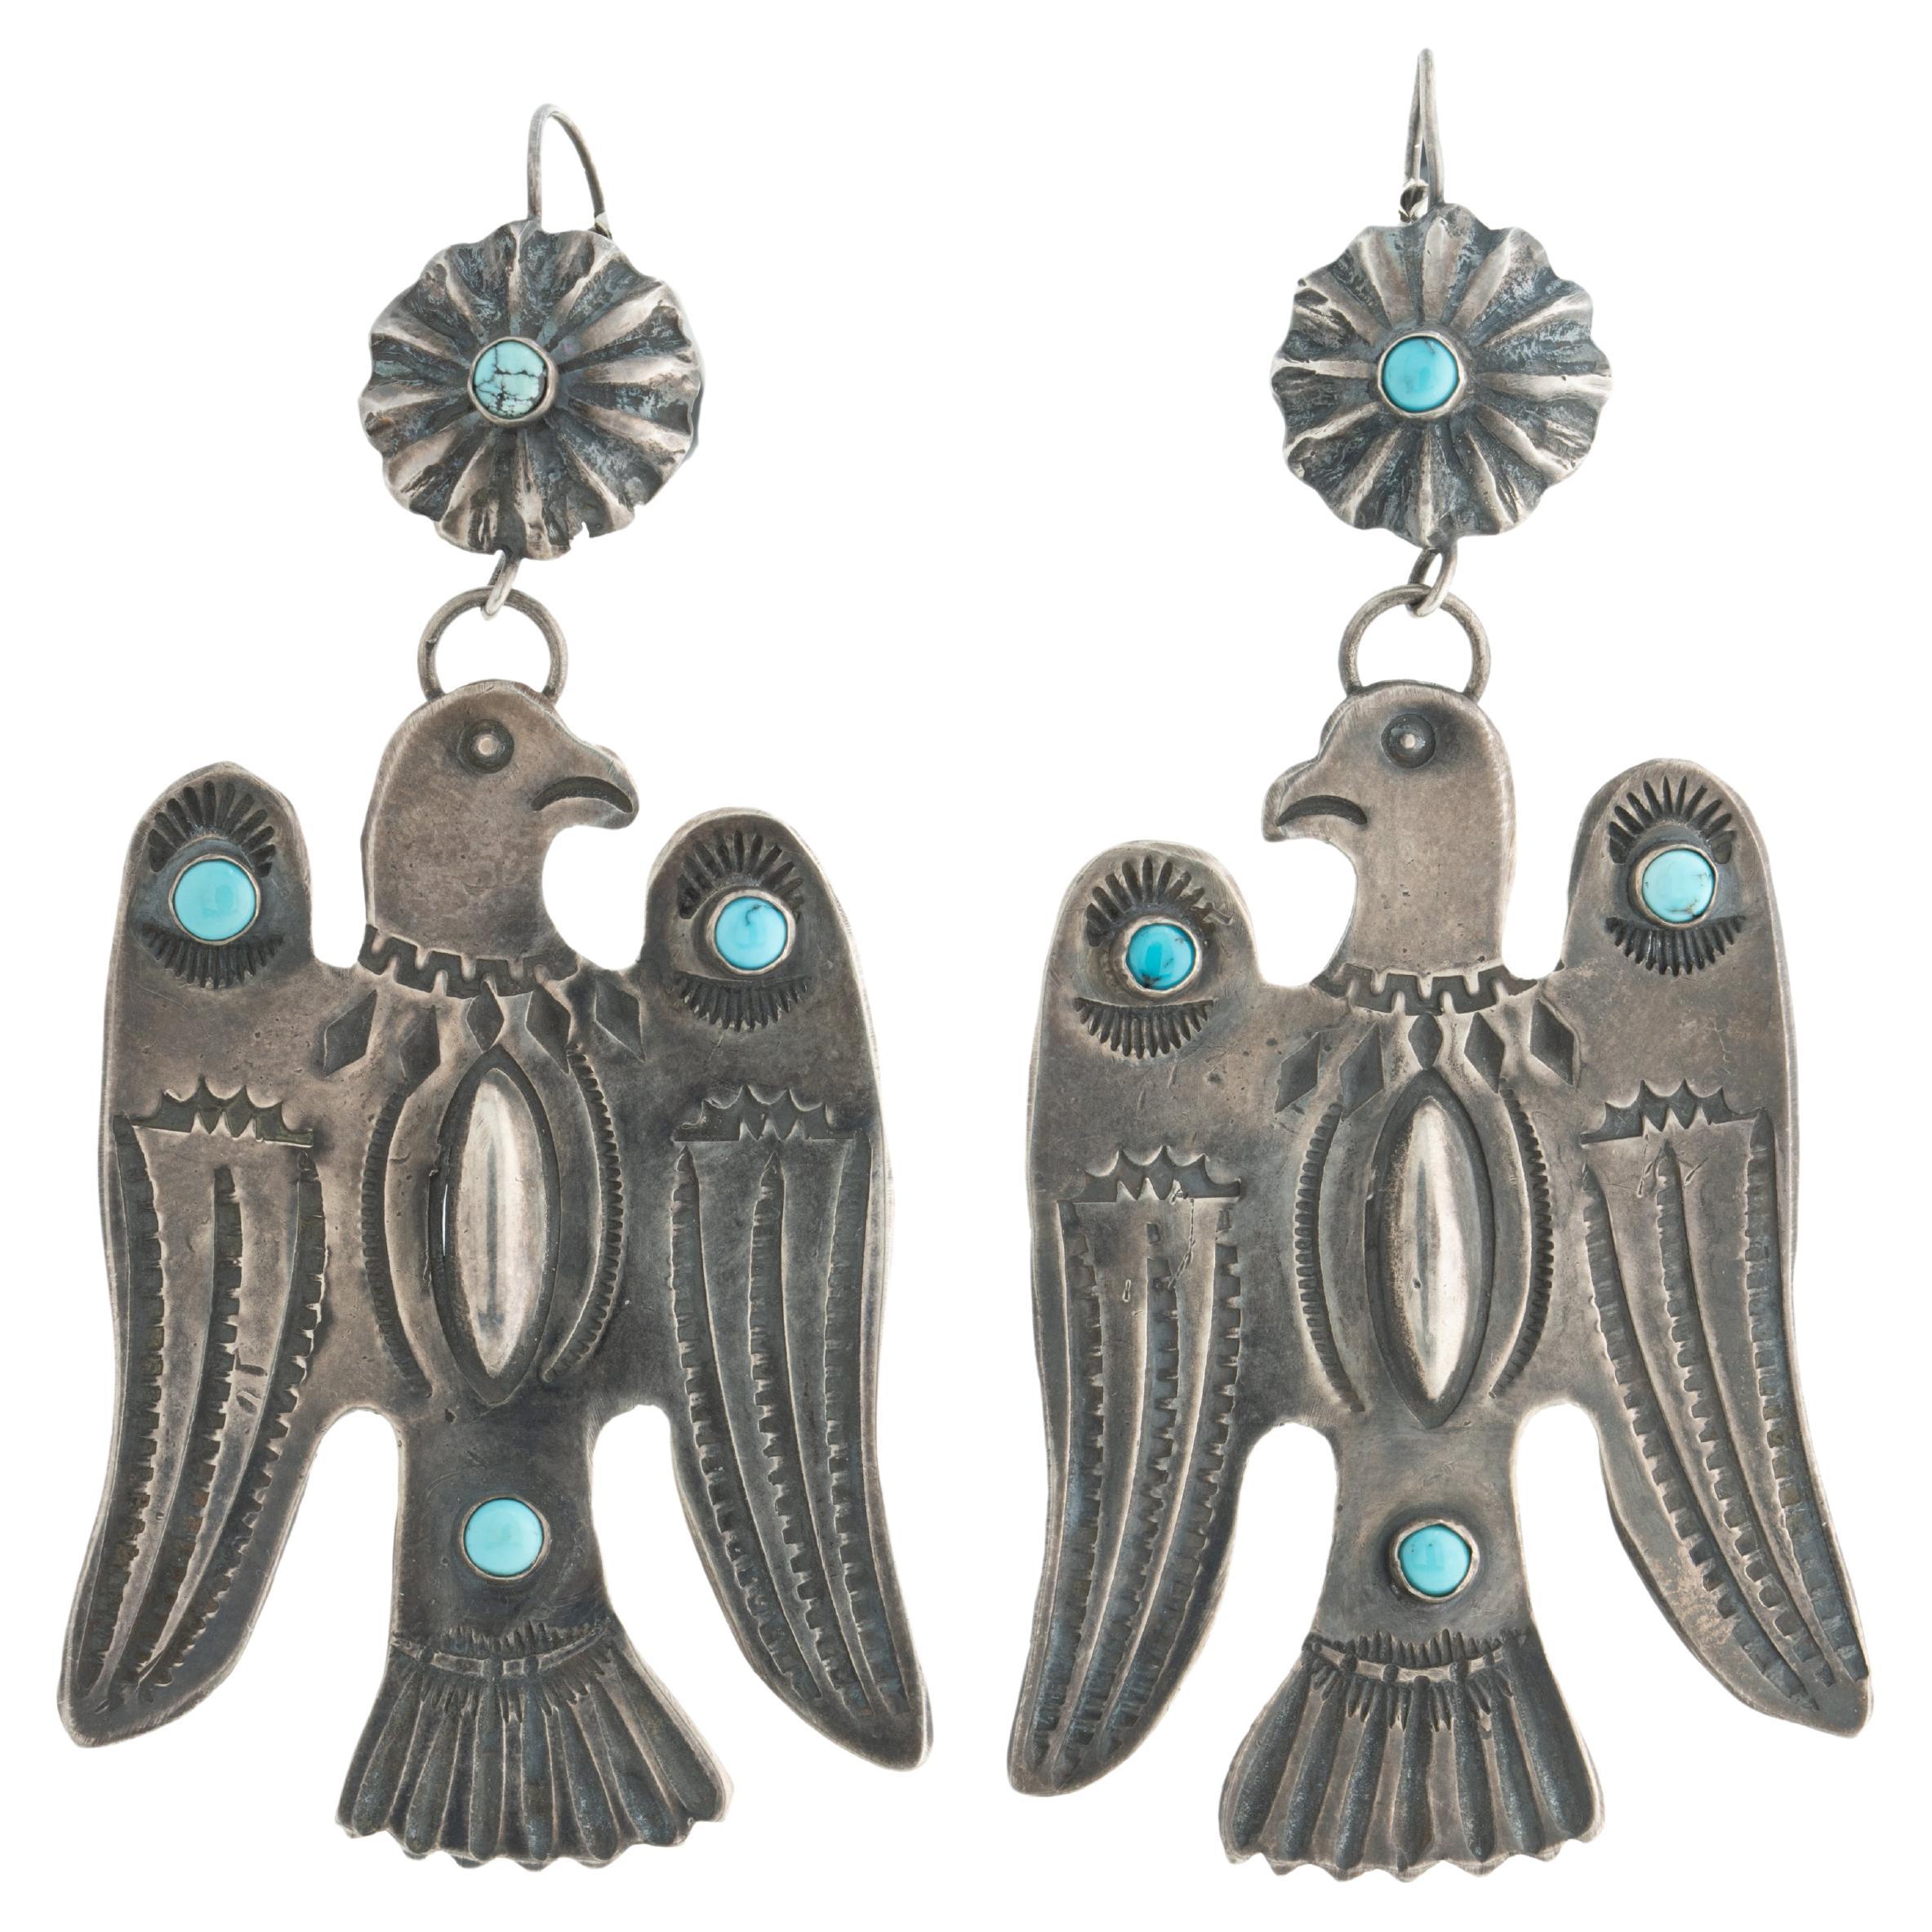 B.Begay Navajo Handmade Sterling Silver Thunder Bird Turquoise Pendant-Earrings 